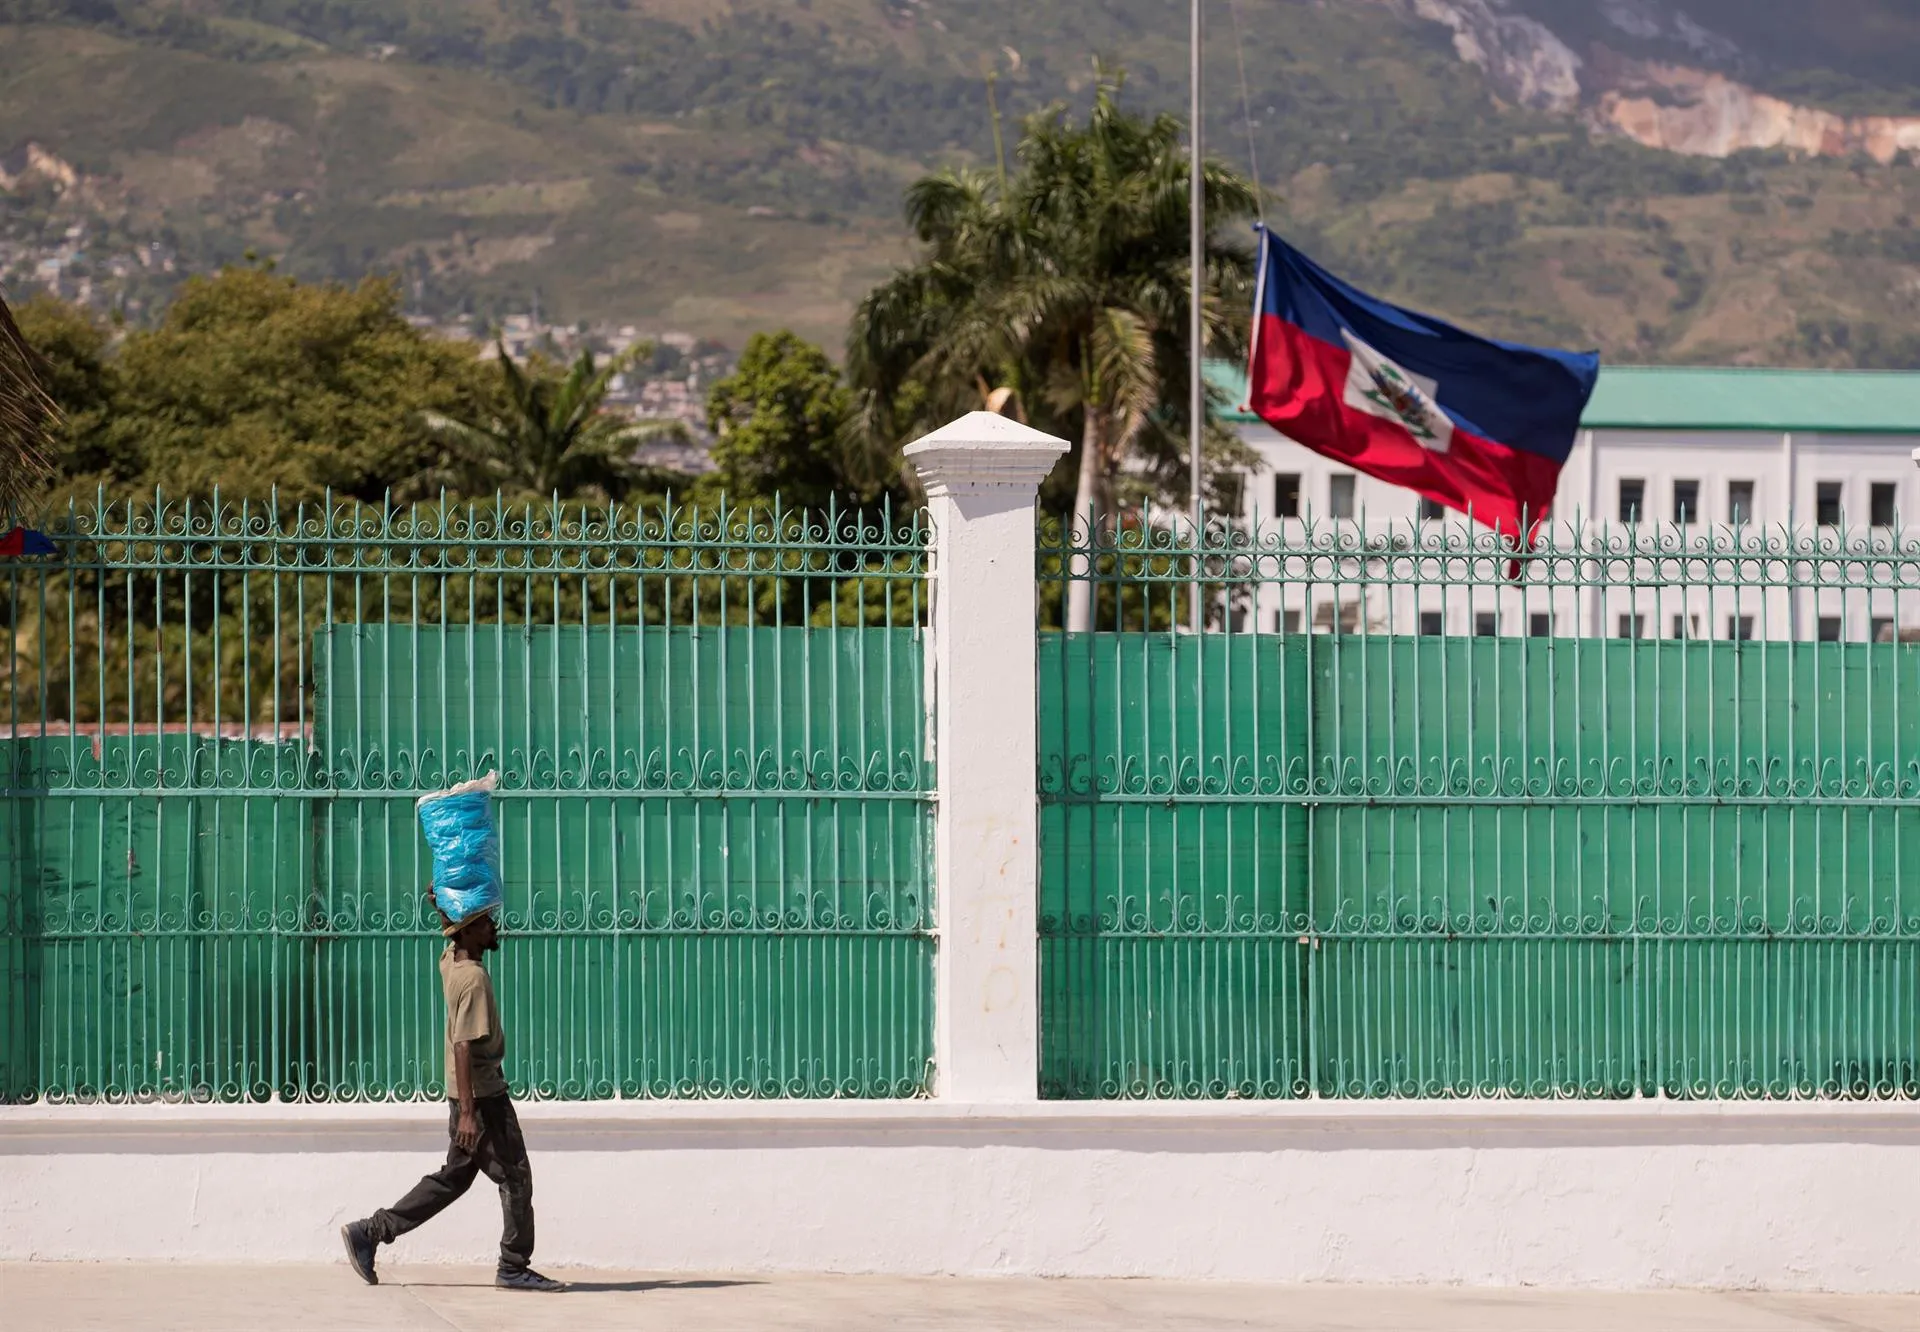 Las elecciones generales en Haití se posponen para el 7 de noviembre